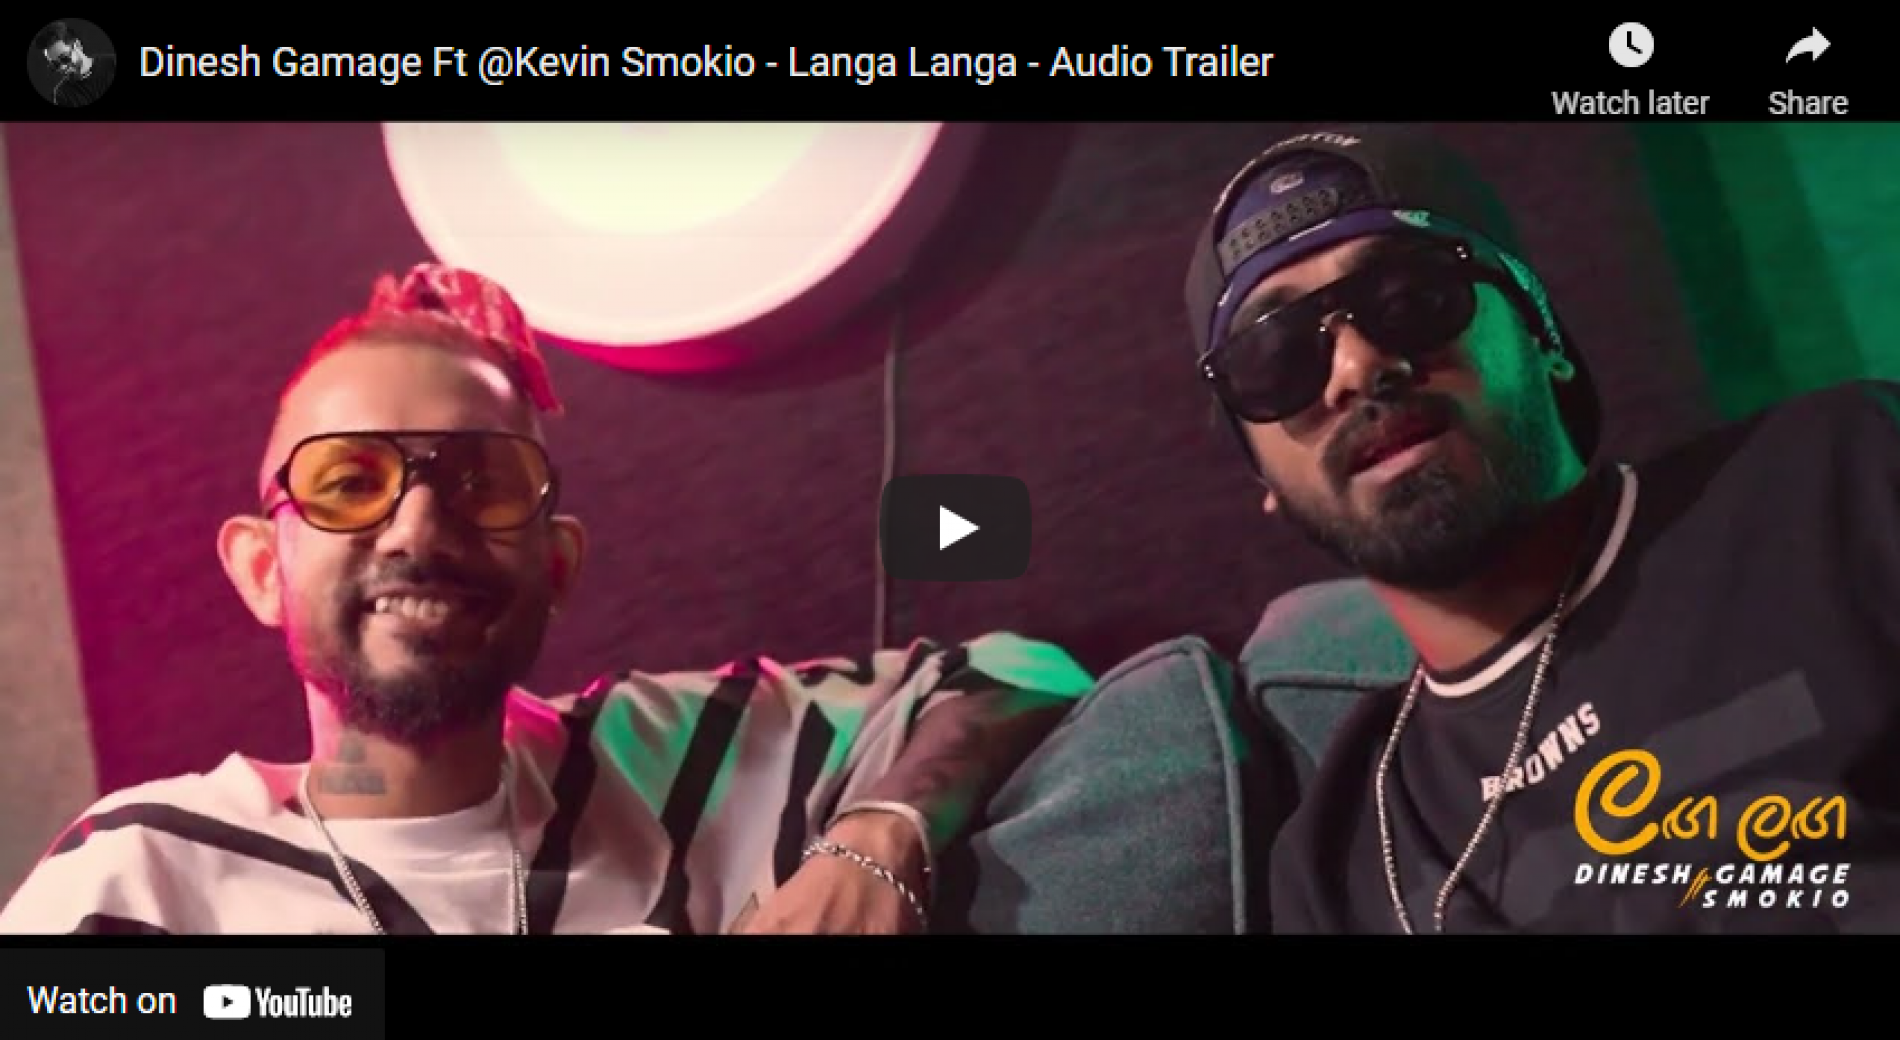 News : Dinesh Gamage Ft @Kevin Smokio – Langa Langa – Audio Trailer